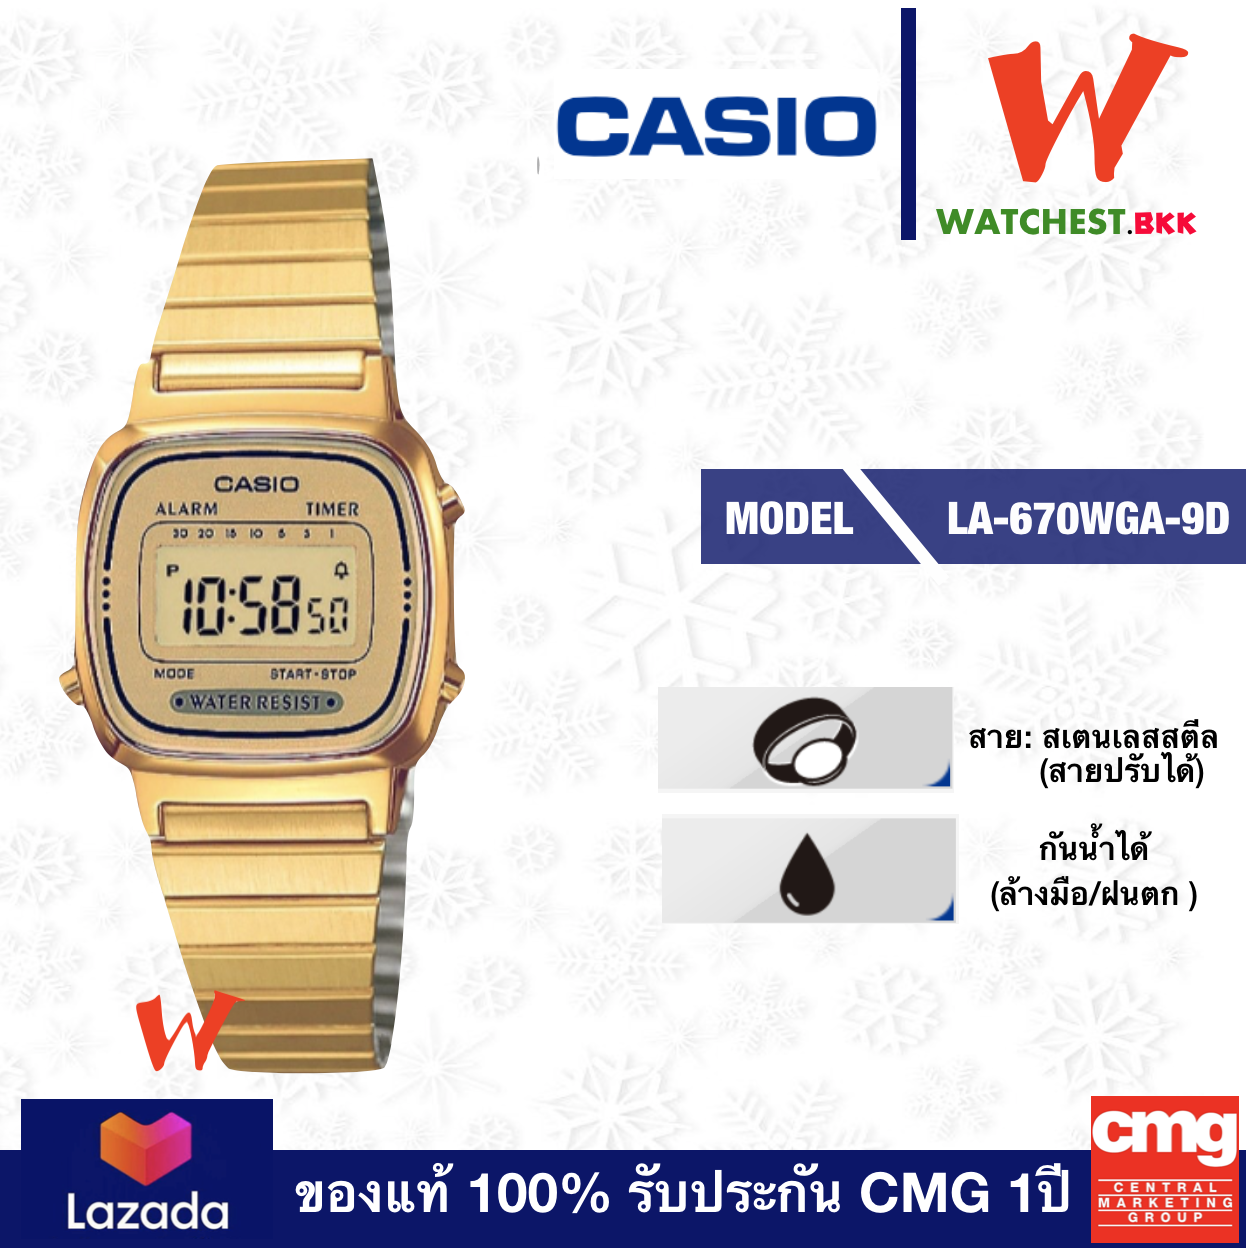 casio นาฬิกาผู้หญิง สายสเตนเลสทอง เลื่อนปรับระดับเองได้ รุ่น LA-670WGA-9D, คาสิโอ้ LA670, LA-670 สายเหล็กสีทอง (watchestbkk คาสิโอ แท้ ของแท้100% ประกันCMG